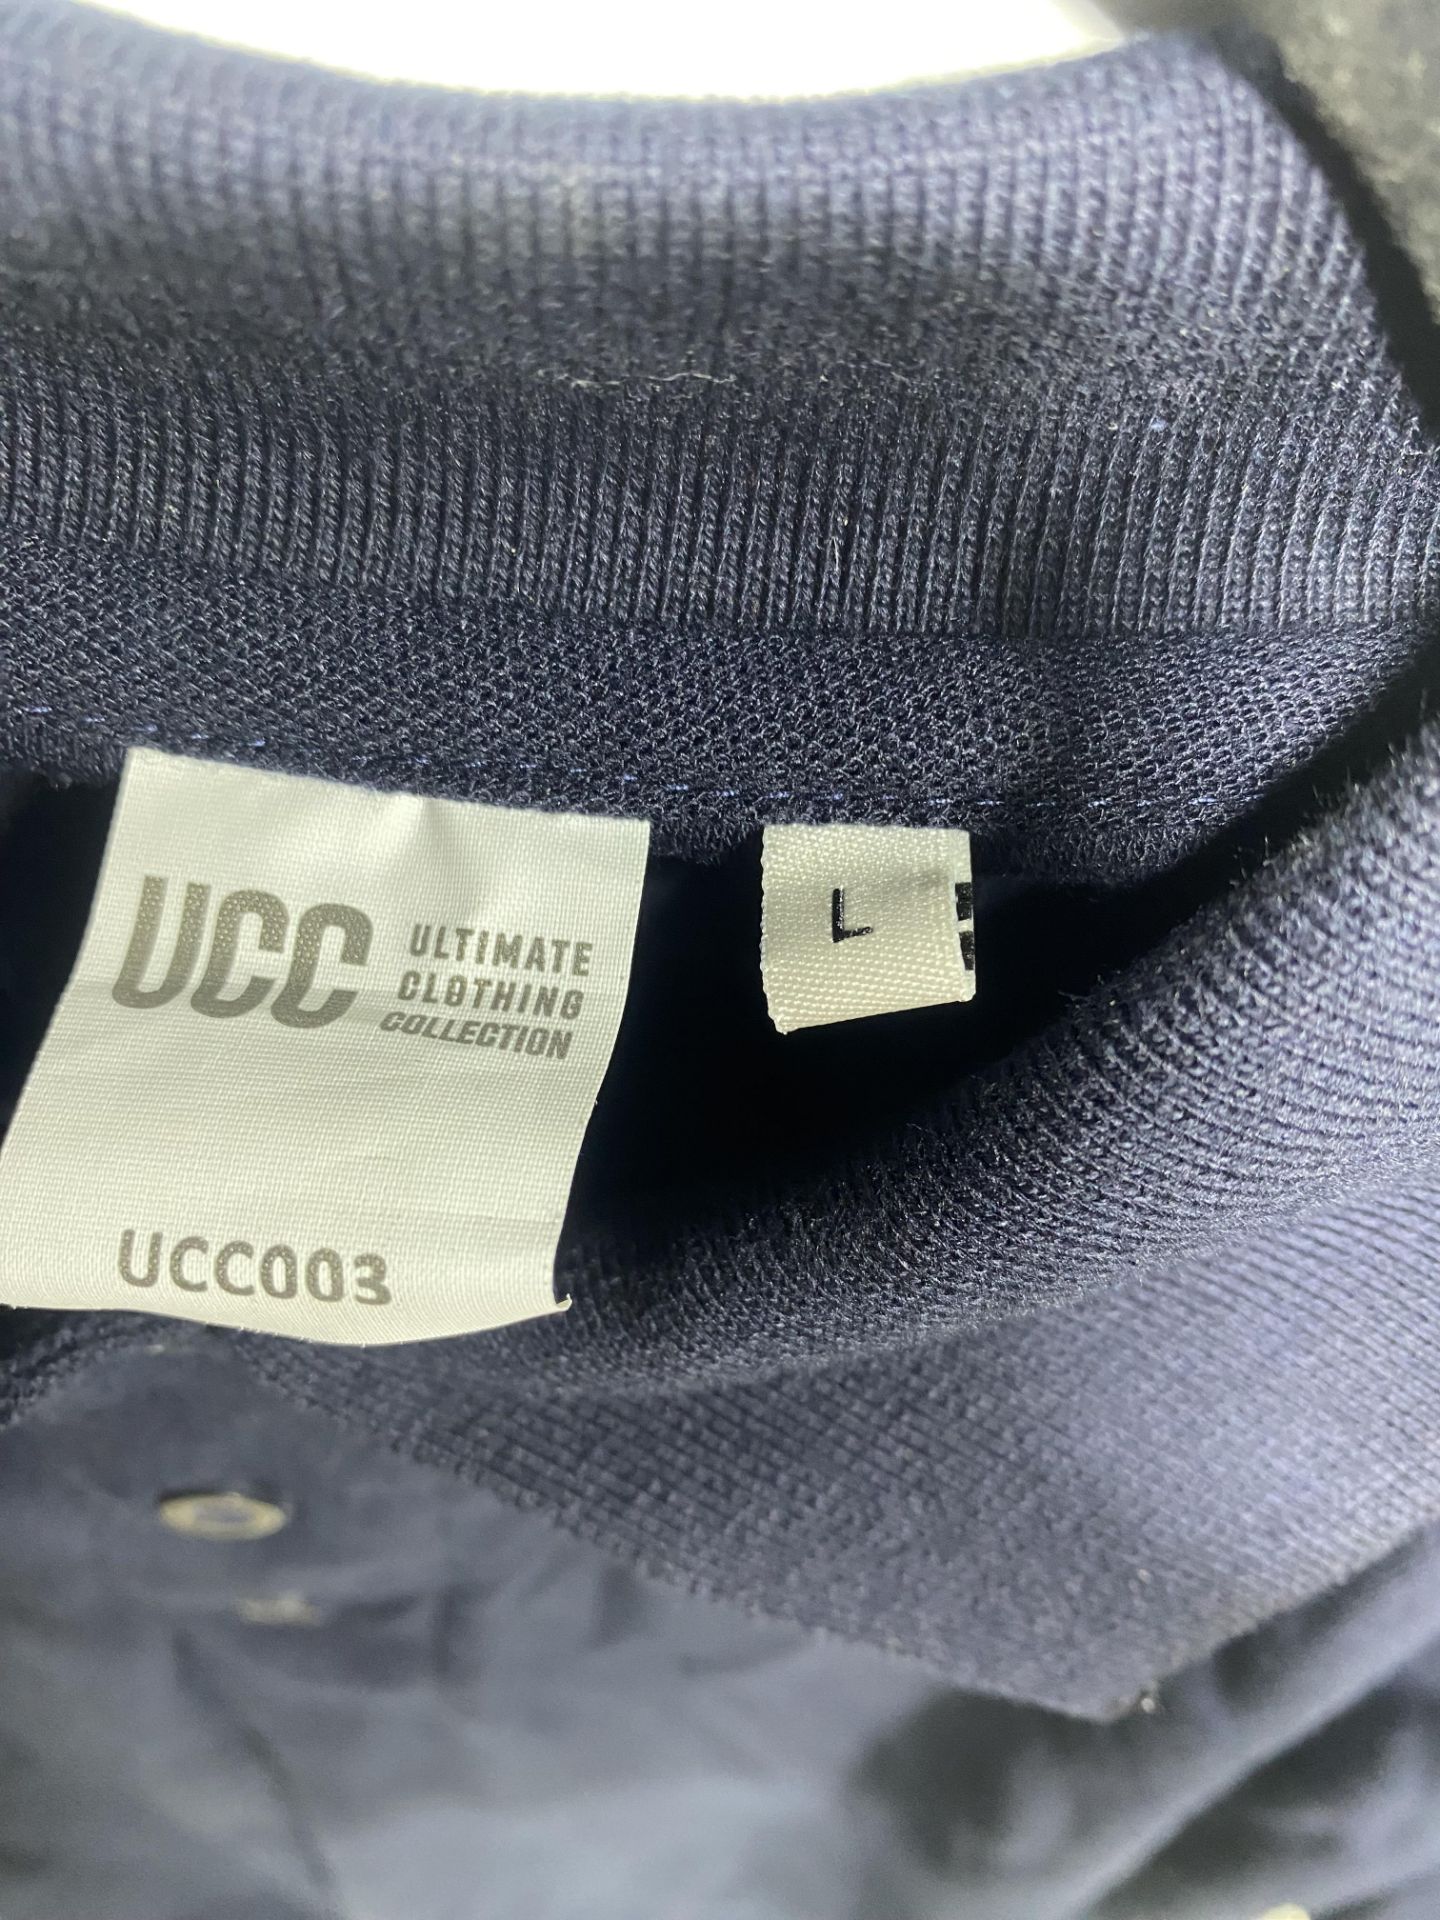 20 x UCC 003 Everyday Polo Shirts, Size Large - Image 5 of 5